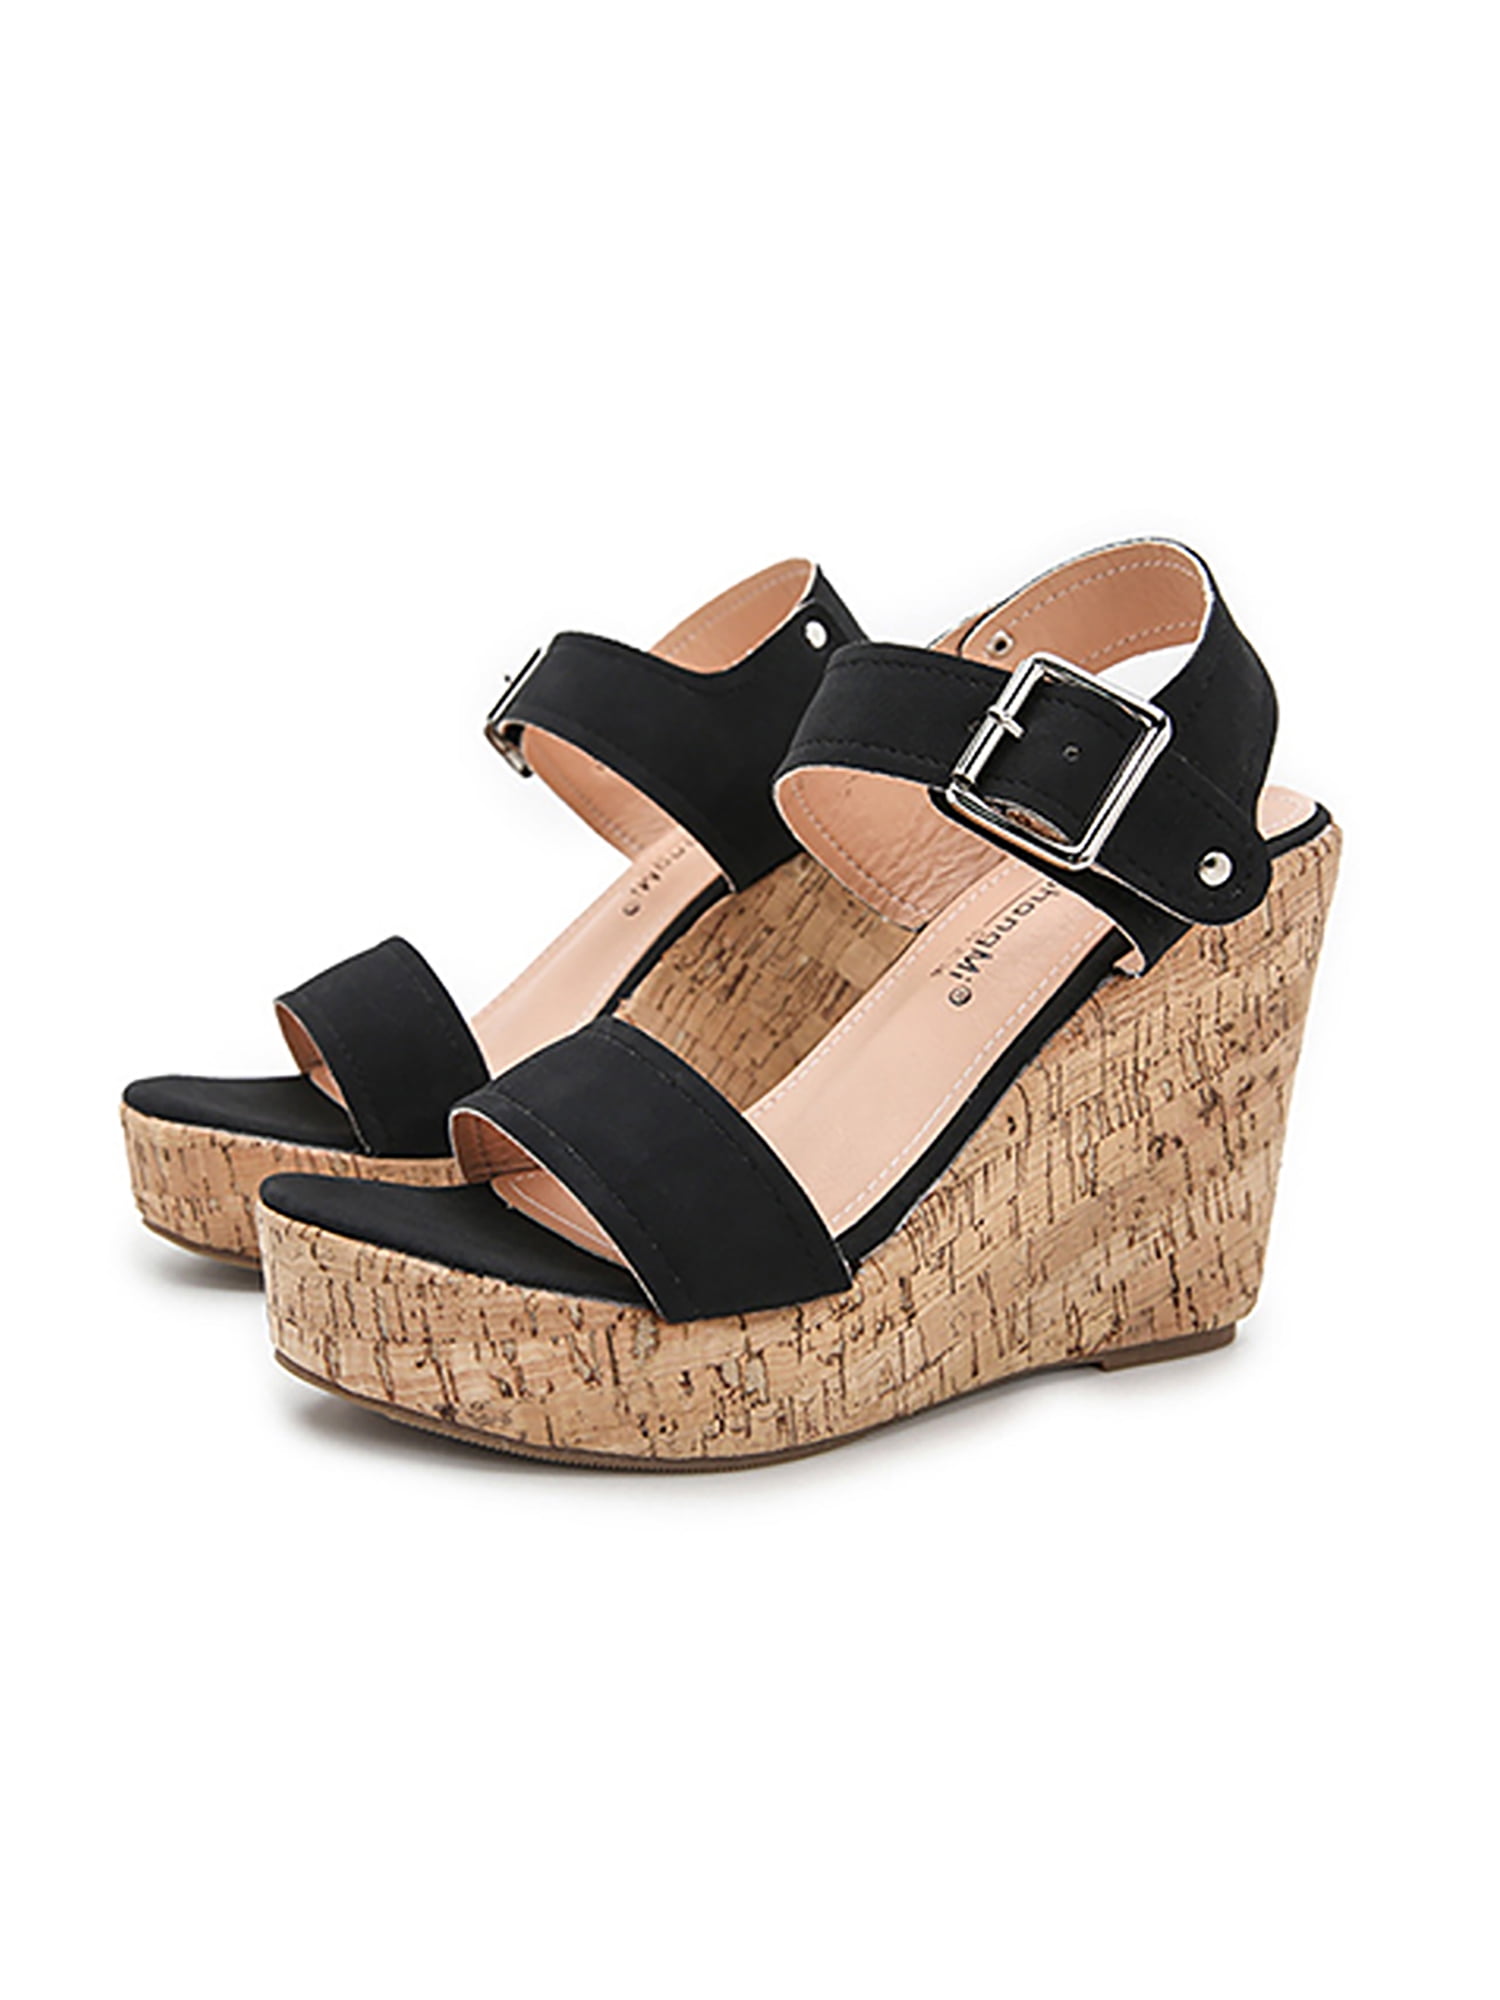 Women Slingbacks Sandals Platform Wedge Heels Peep Toe Casual Ankle Buckle Shoes 